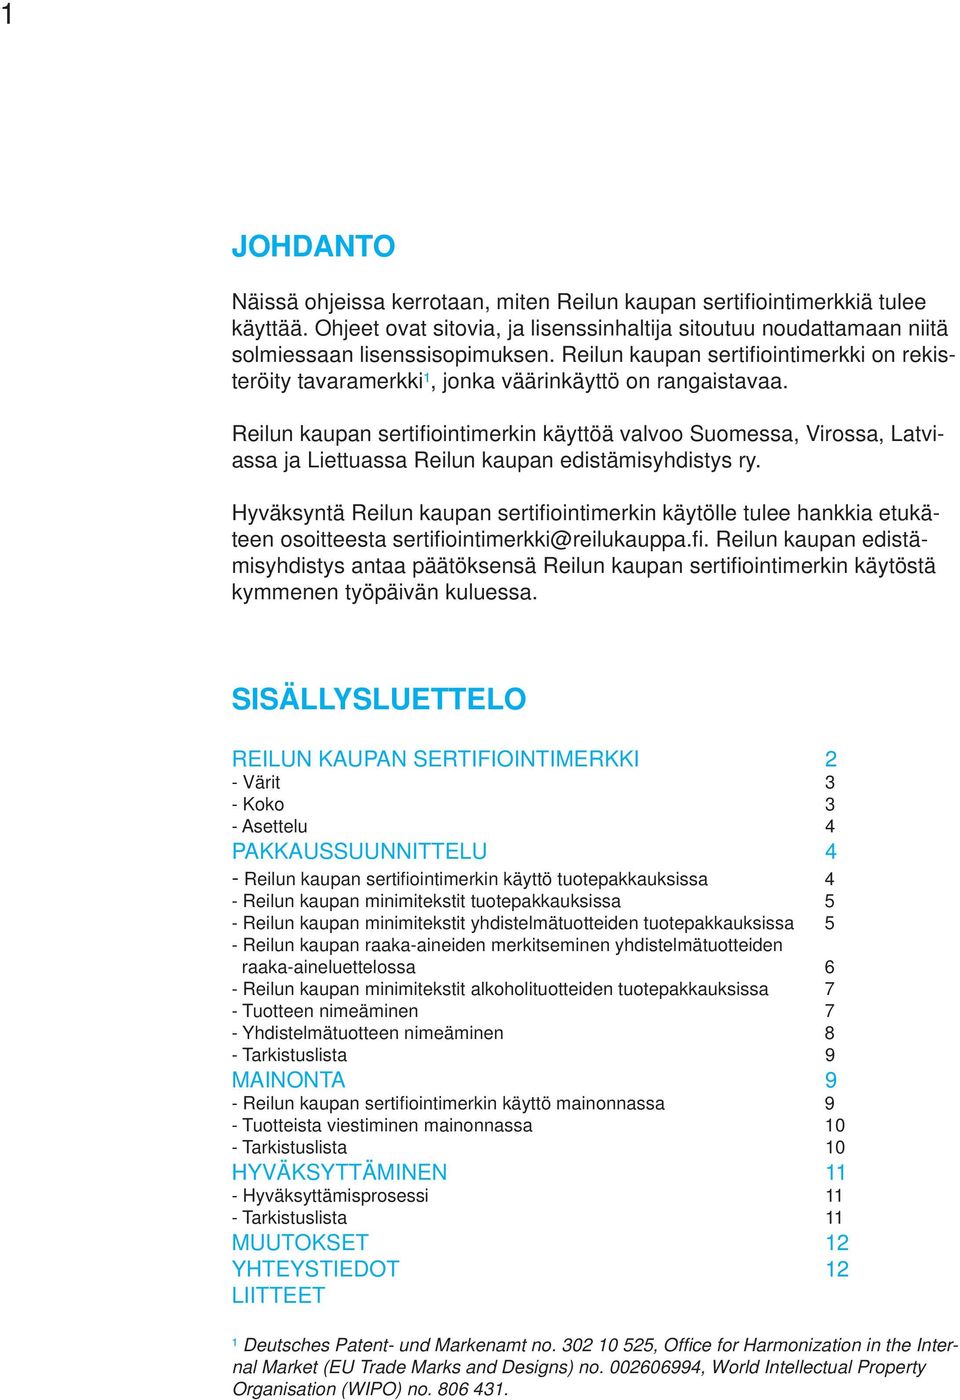 Reilun kaupan sertifi ointimerkin käyttöä valvoo Suomessa, Virossa, Latviassa ja Liettuassa Reilun kaupan edistämisyhdistys ry.